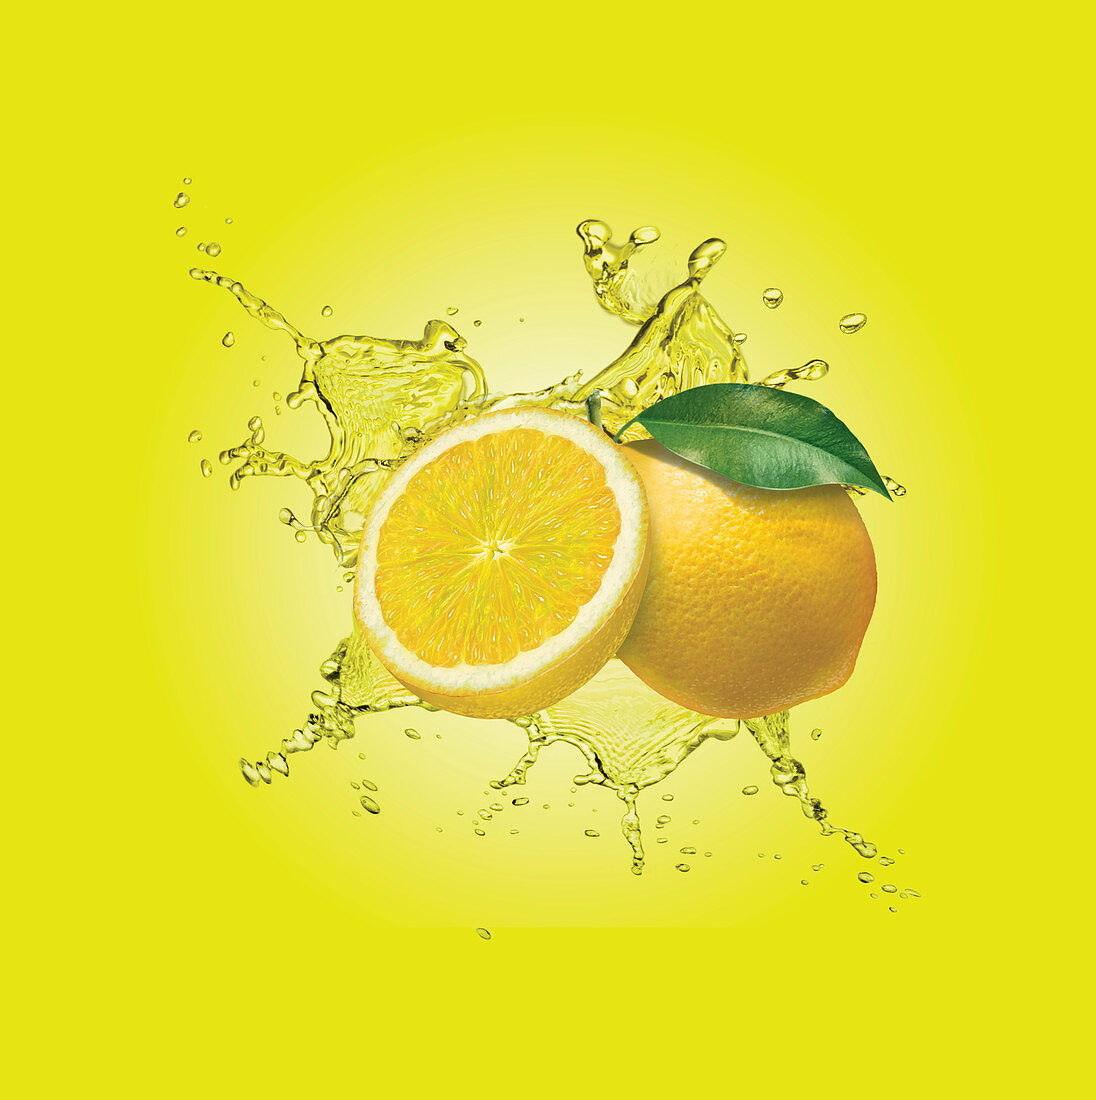 Water splashing around lemons, illustration